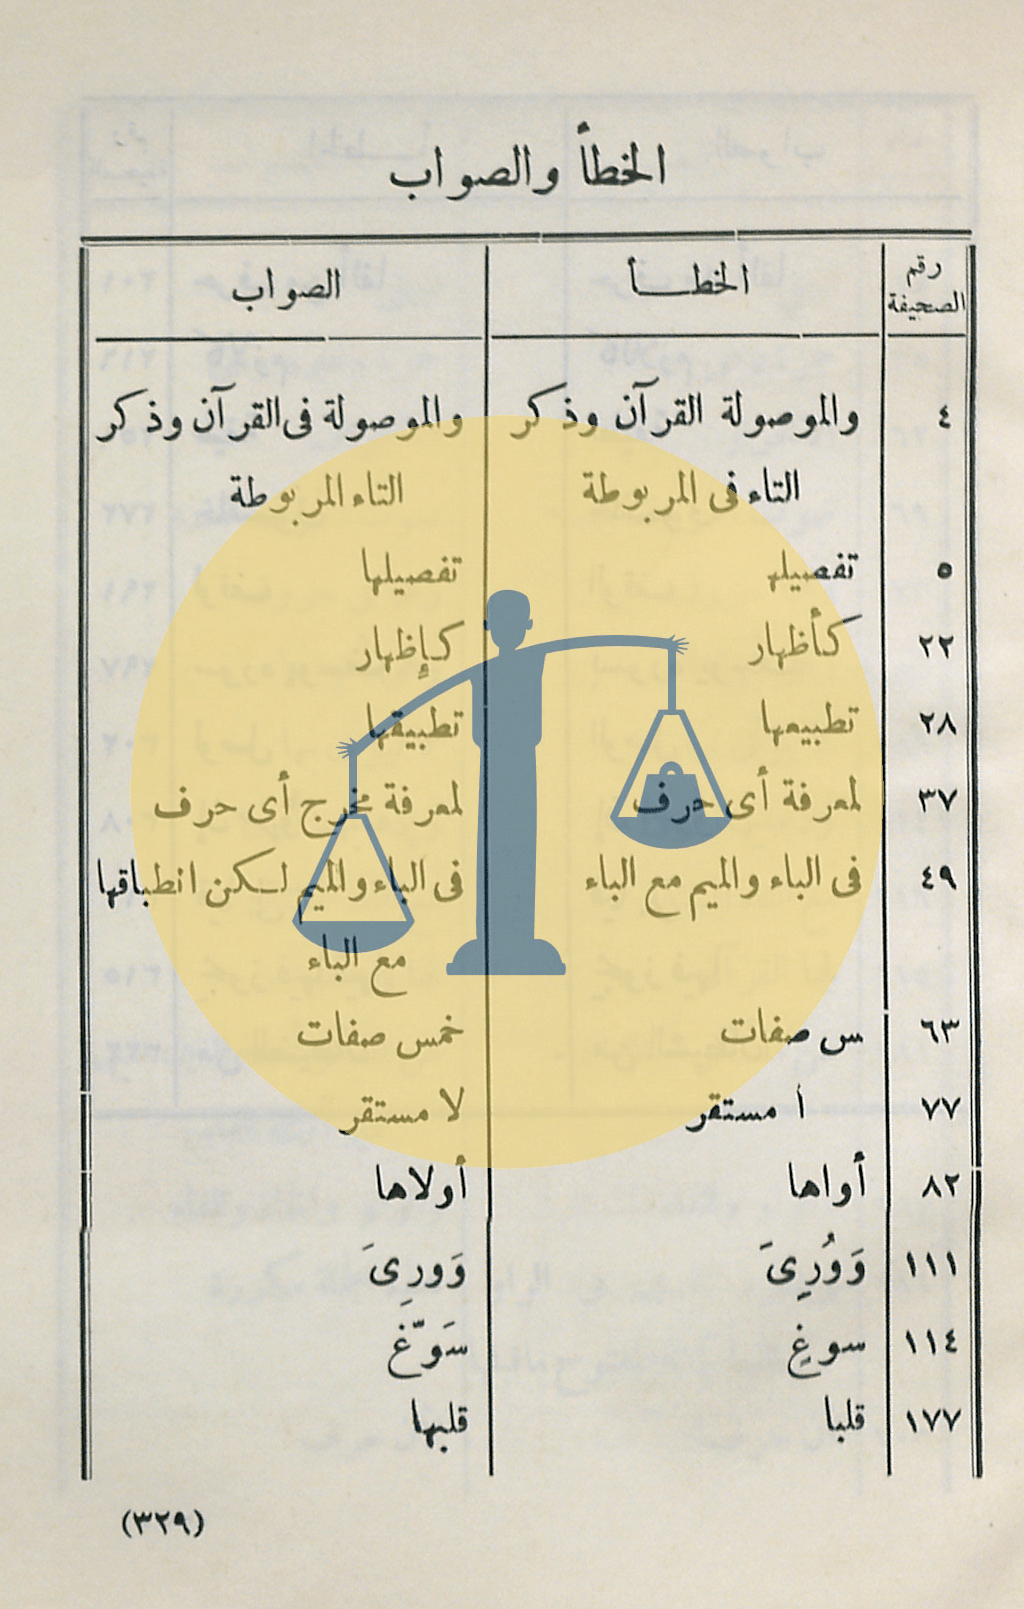 ص 1 من فهرس الأخطاء المطبعية في كتاب أحكام قراءة القرآن للحصري